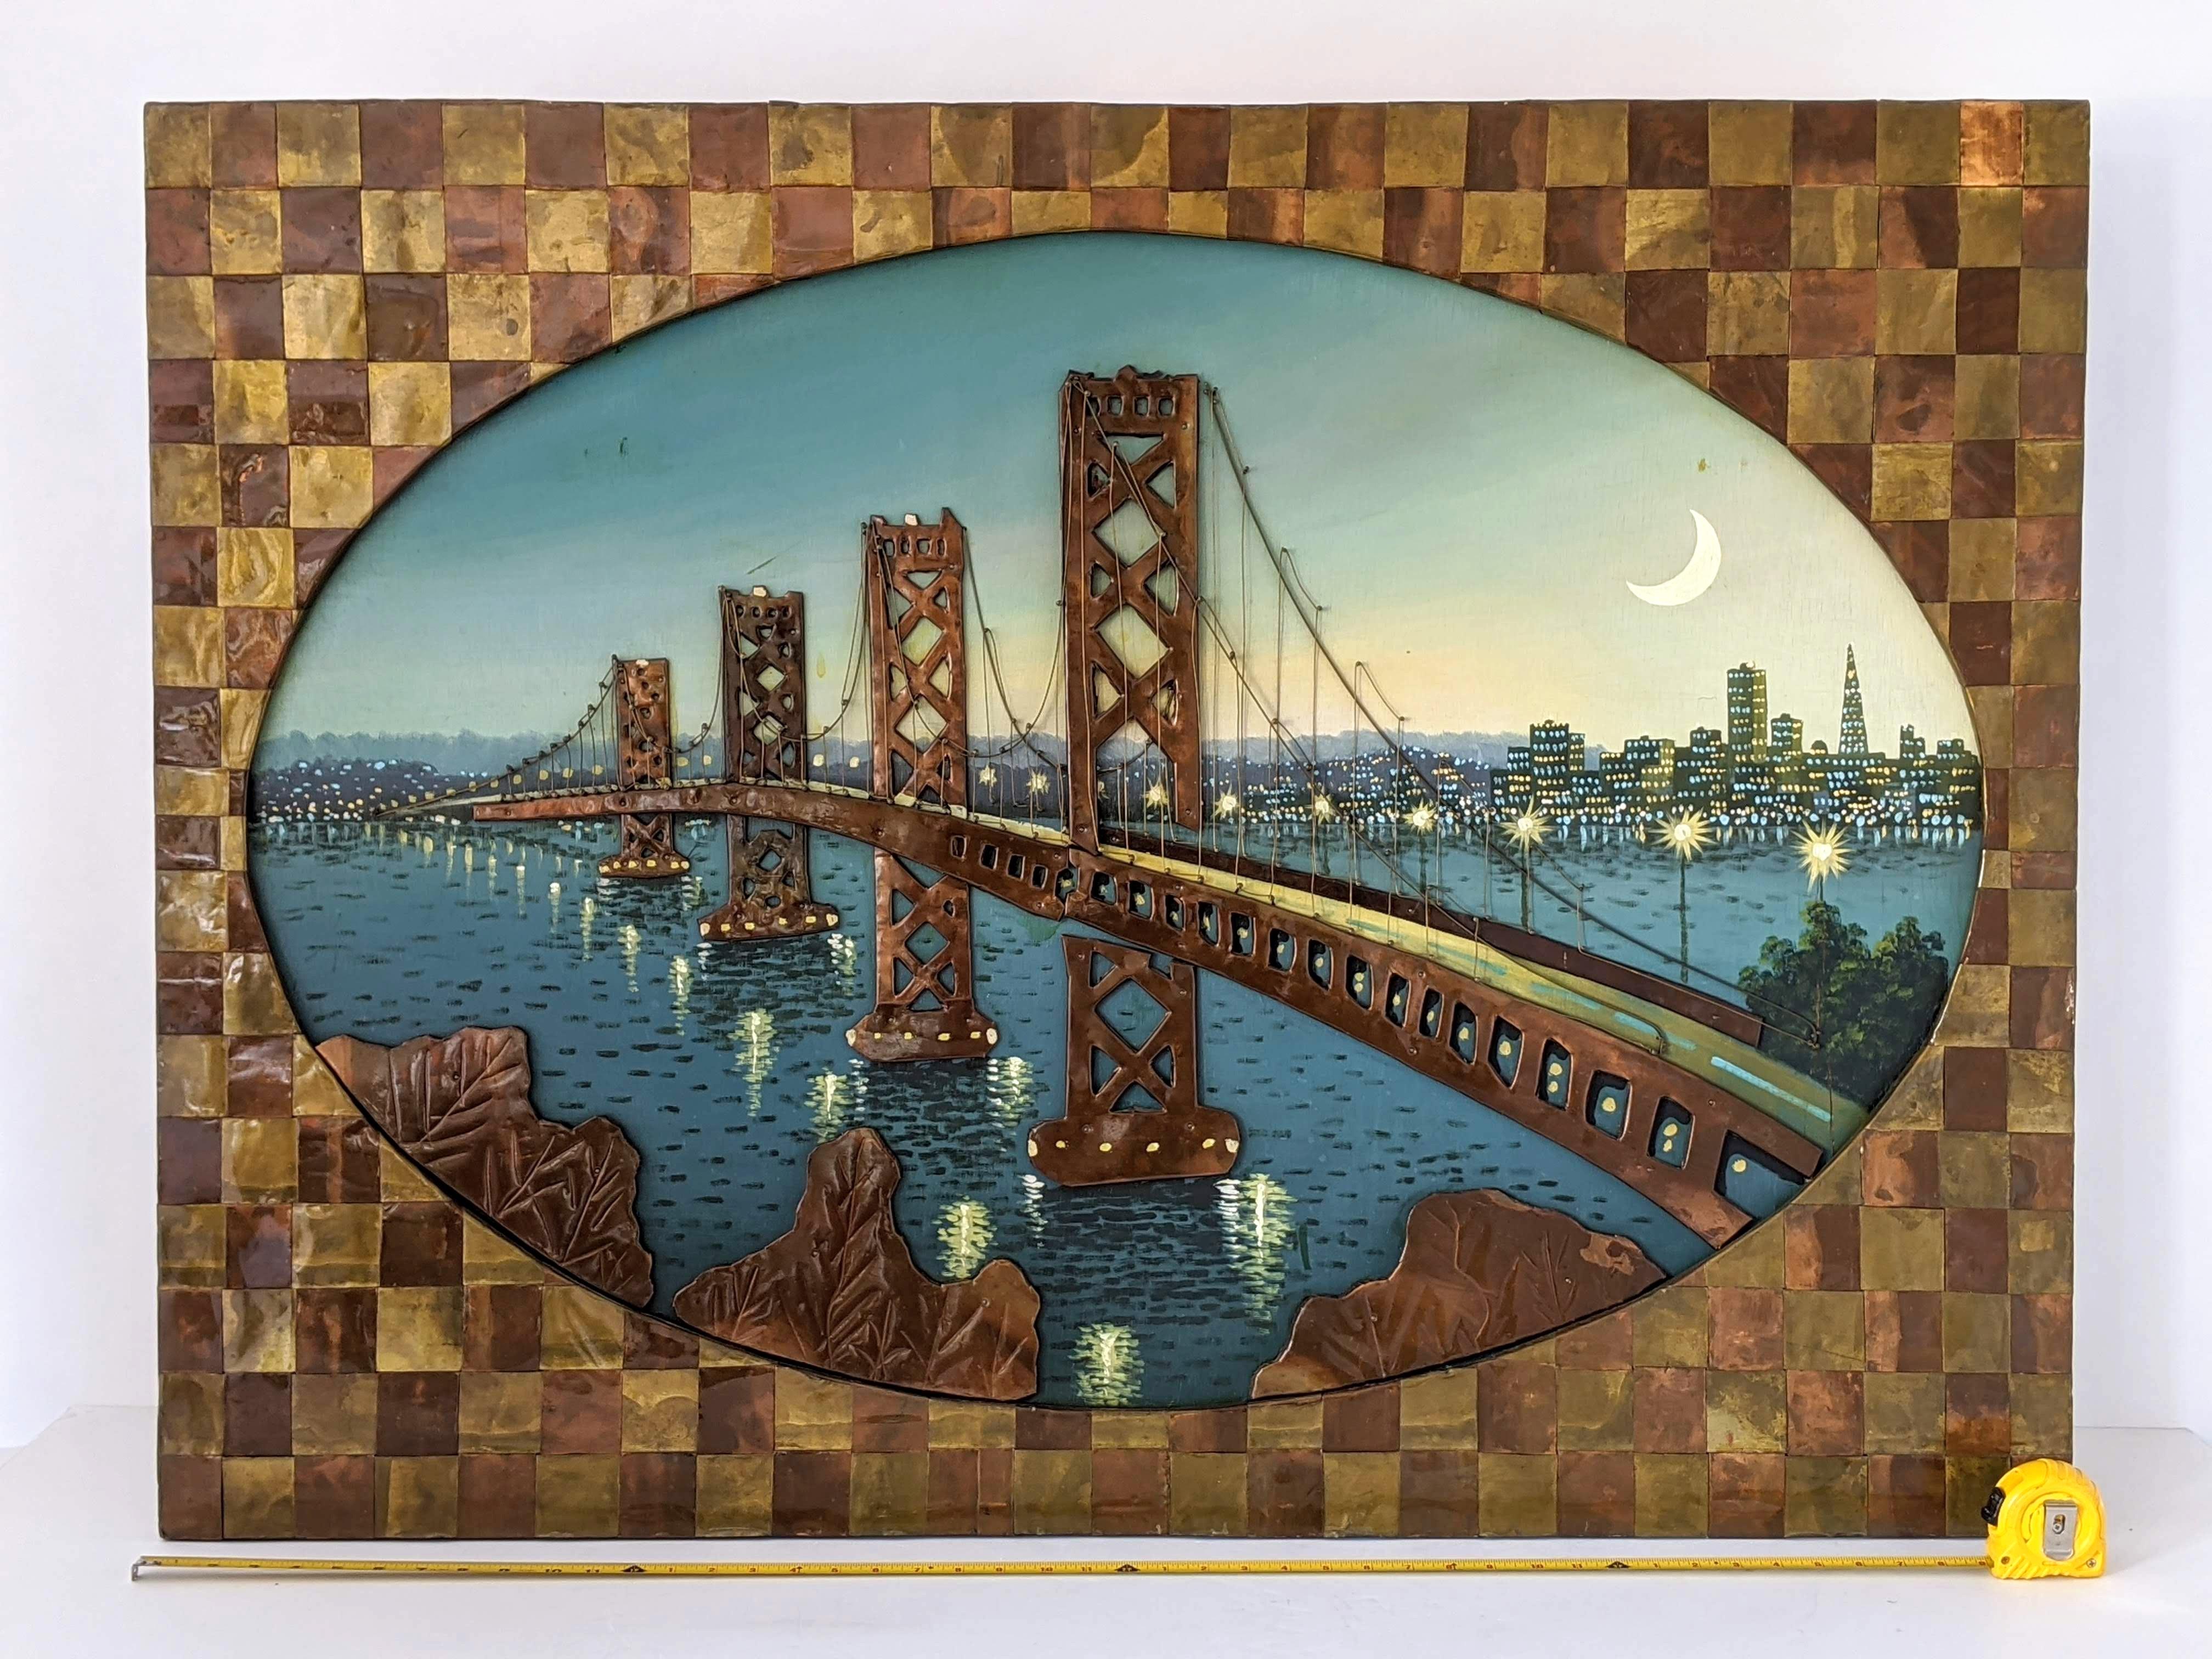 Eine gut gemachte Skulptur aus Messing- und Kupferblech mit einer lackierten Oberfläche kombiniert mit einem Gemälde der Bay Bridge von einem unbekannten talentierten Künstler in den 1960er Jahren.

Maße: 48 Zoll breit, 36 Zoll hoch und 3/4 Zoll